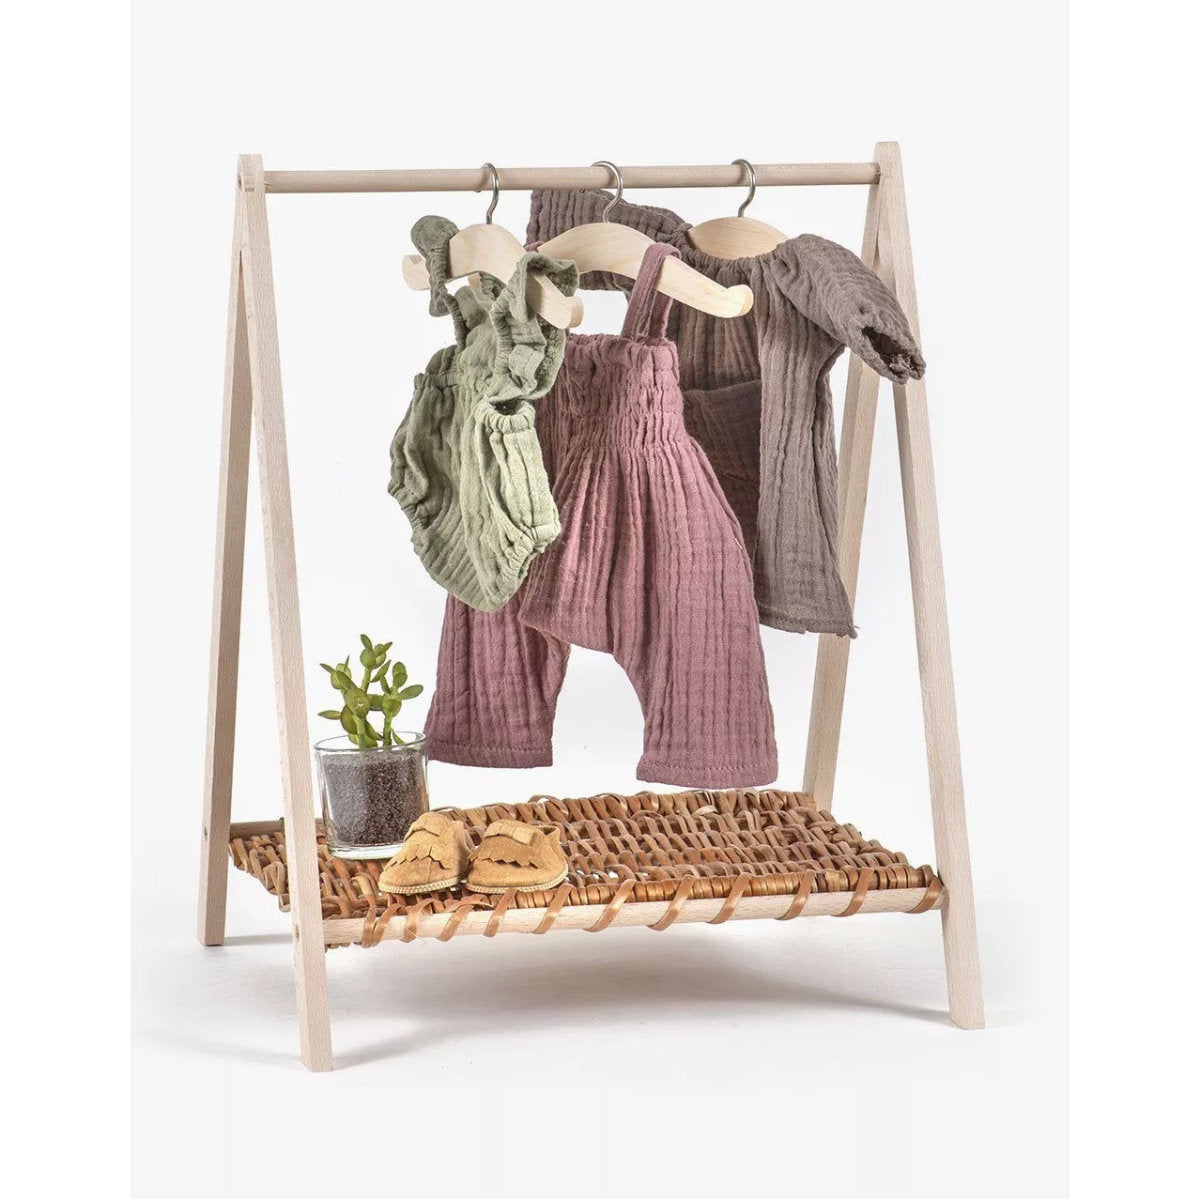 minikane - Kleiderständer Wendy clothes rack in natural wood & wicker